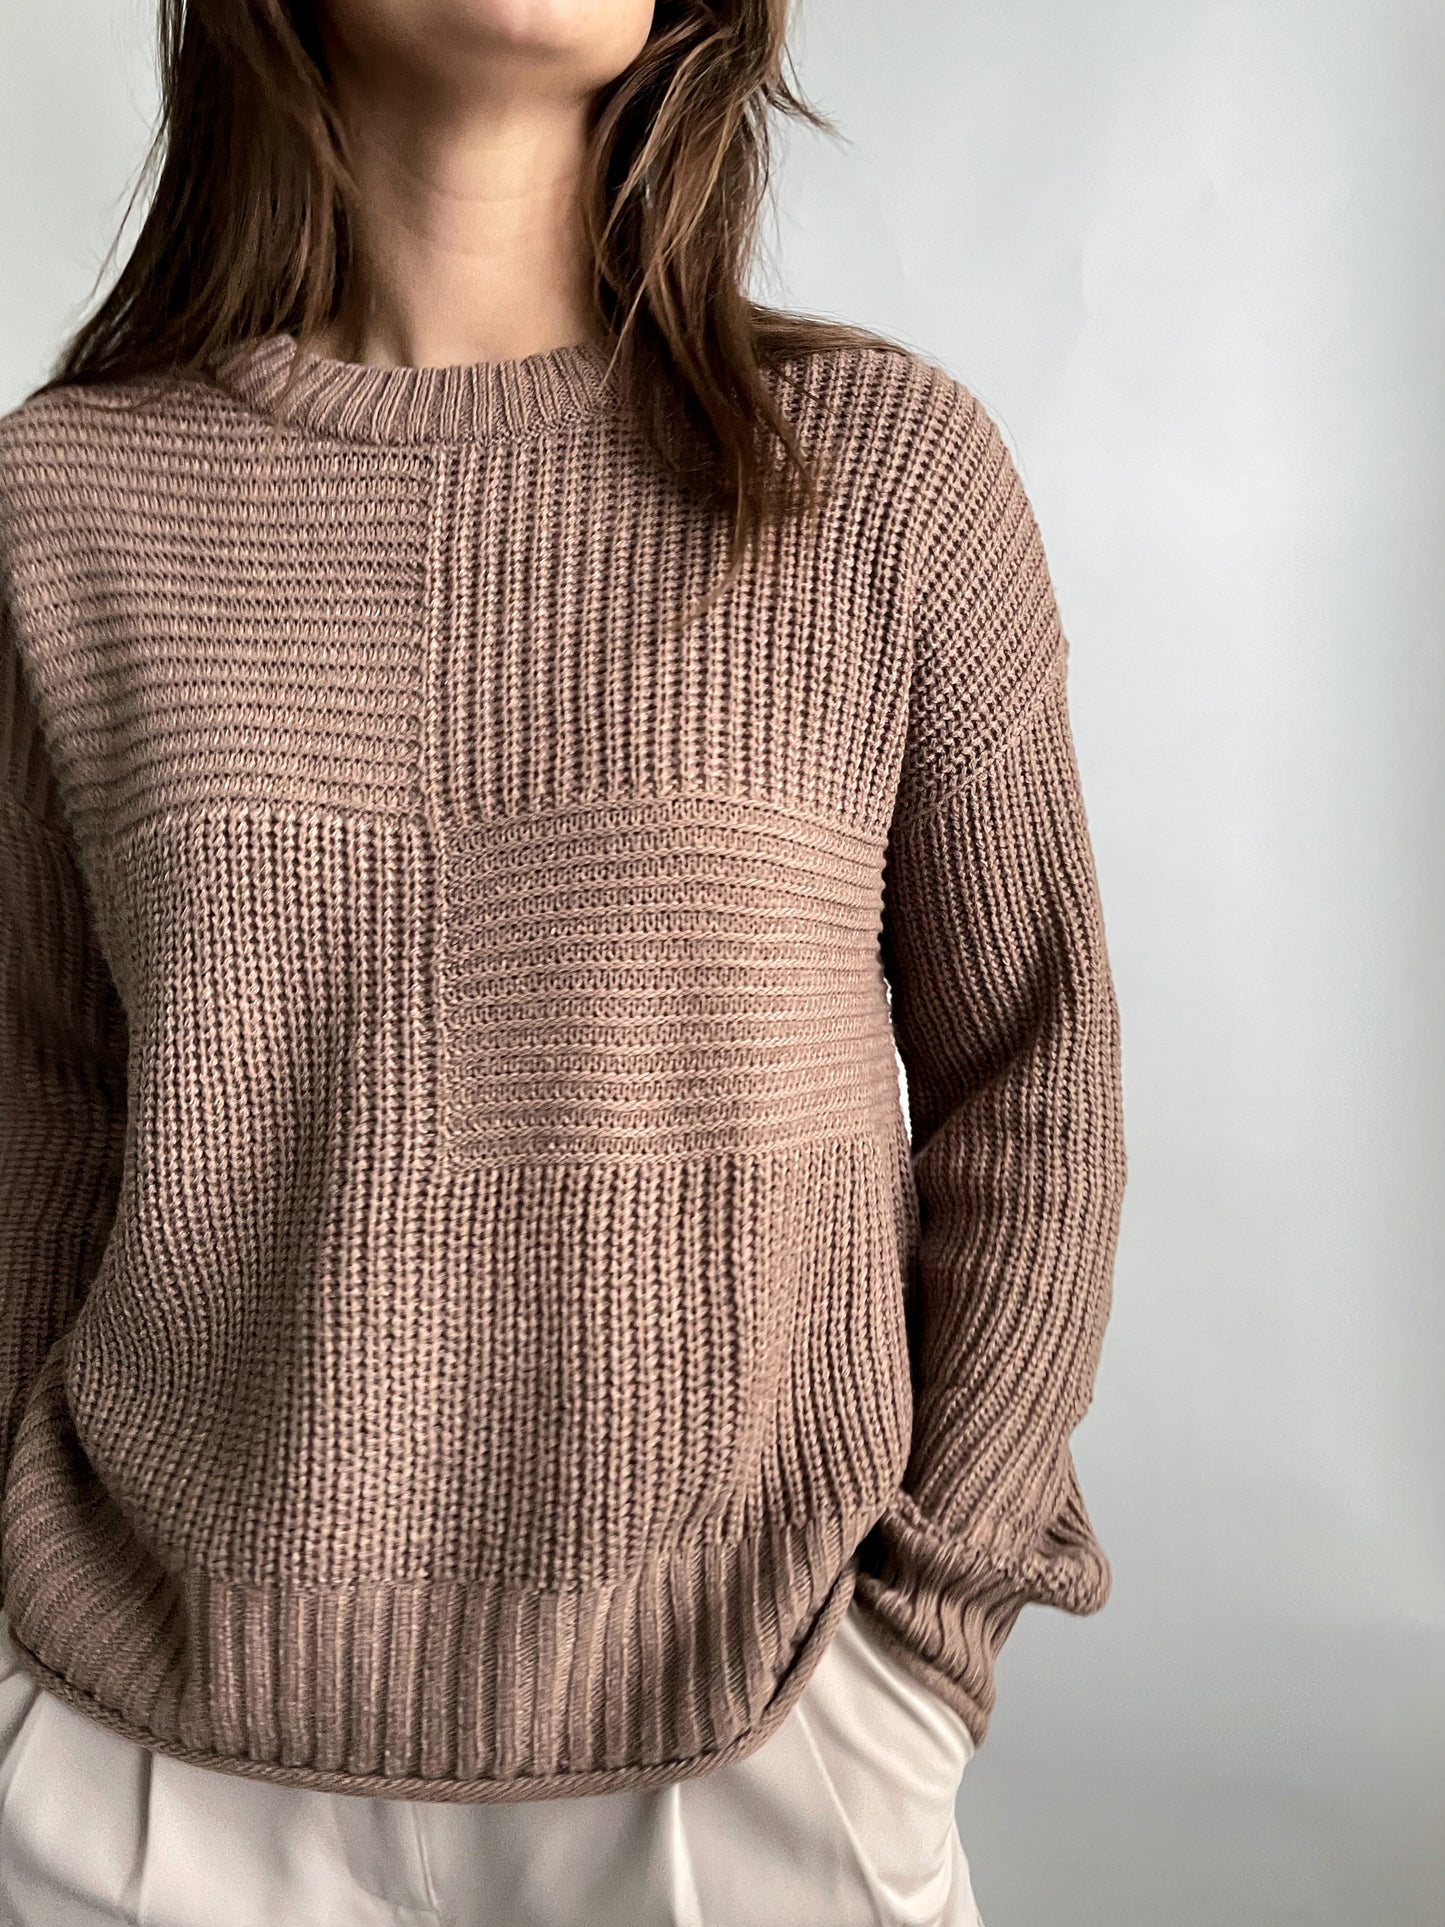 Mellan Sweater